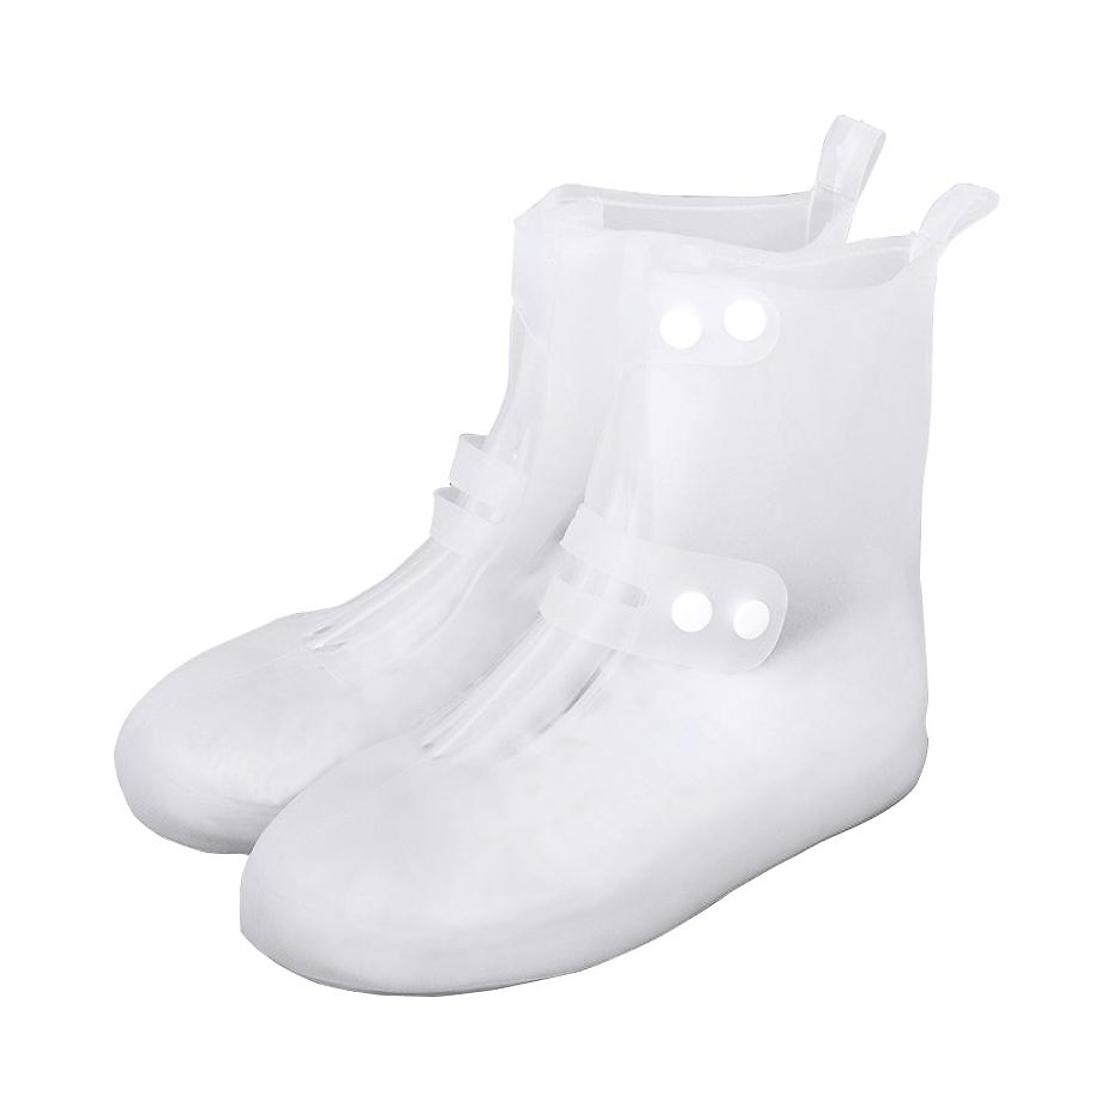 Фото 1 Cиликоновые чехлы-бахилы для обуви с застежкой XL 44-45 CG WSS3 White